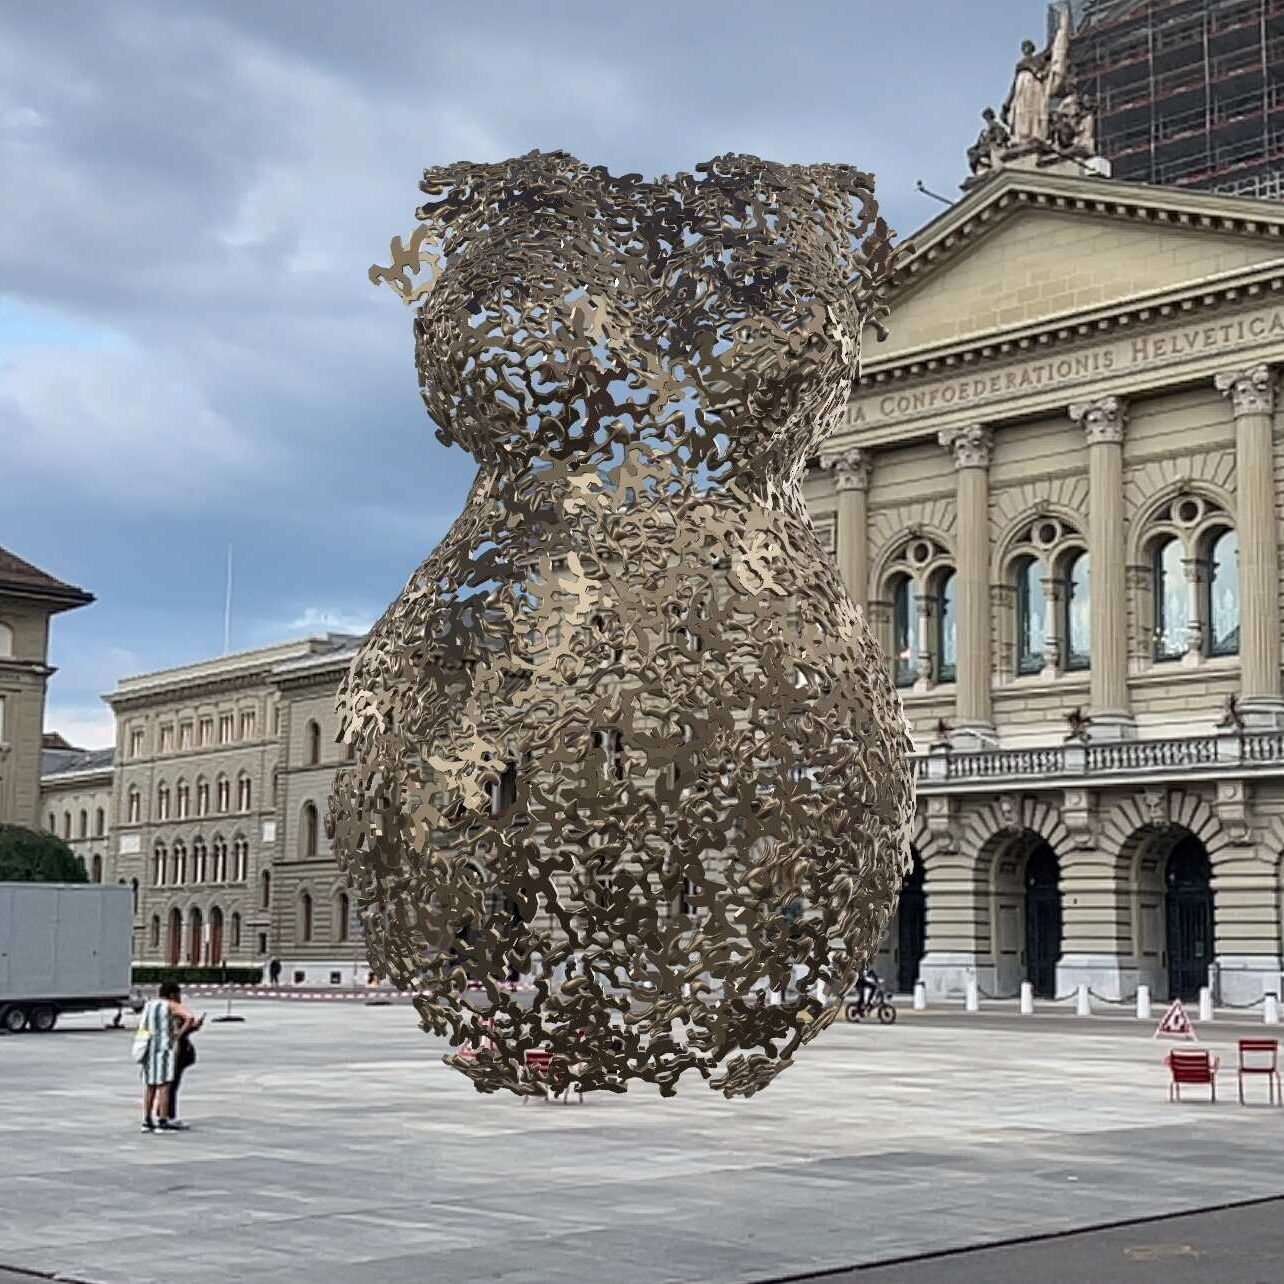 Realtà aumentata: una scultura dell'artista Andrea Stahl in AR di fronte a Palazzo Federale a Berna